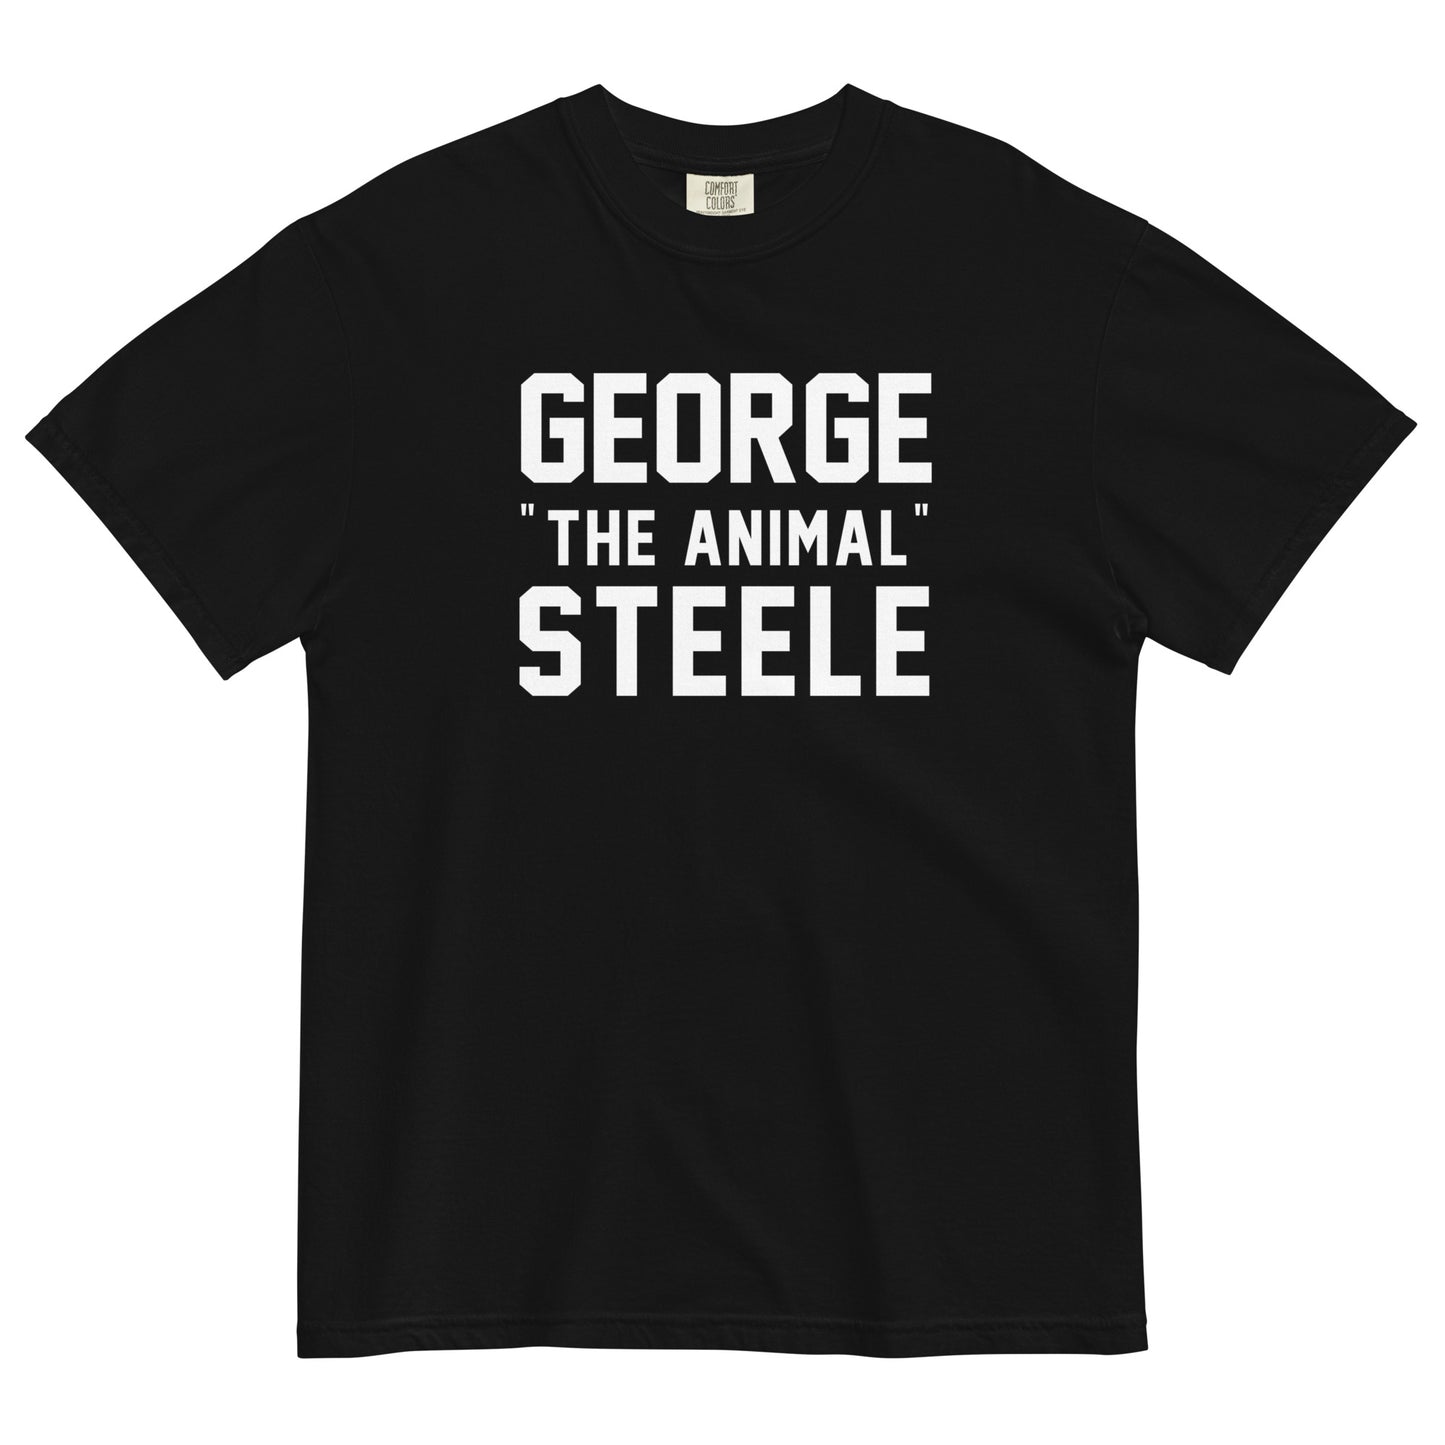 GEORGE "THE ANIMAL" STEELE